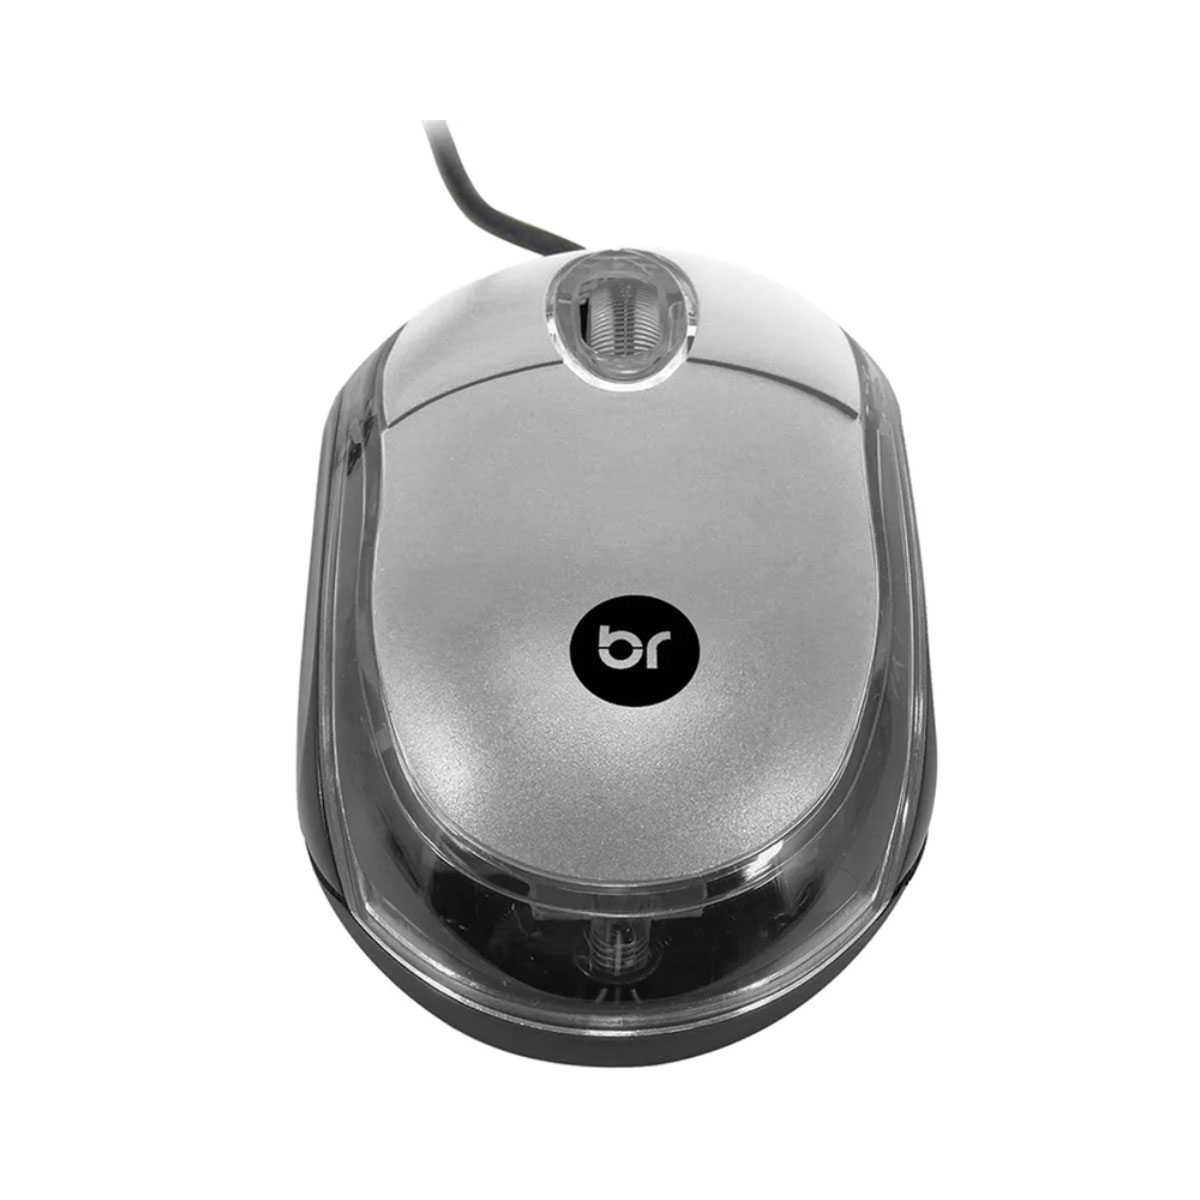 Mouse Bright Standard - 800dpi - Compacto - USB - Prata - 0107